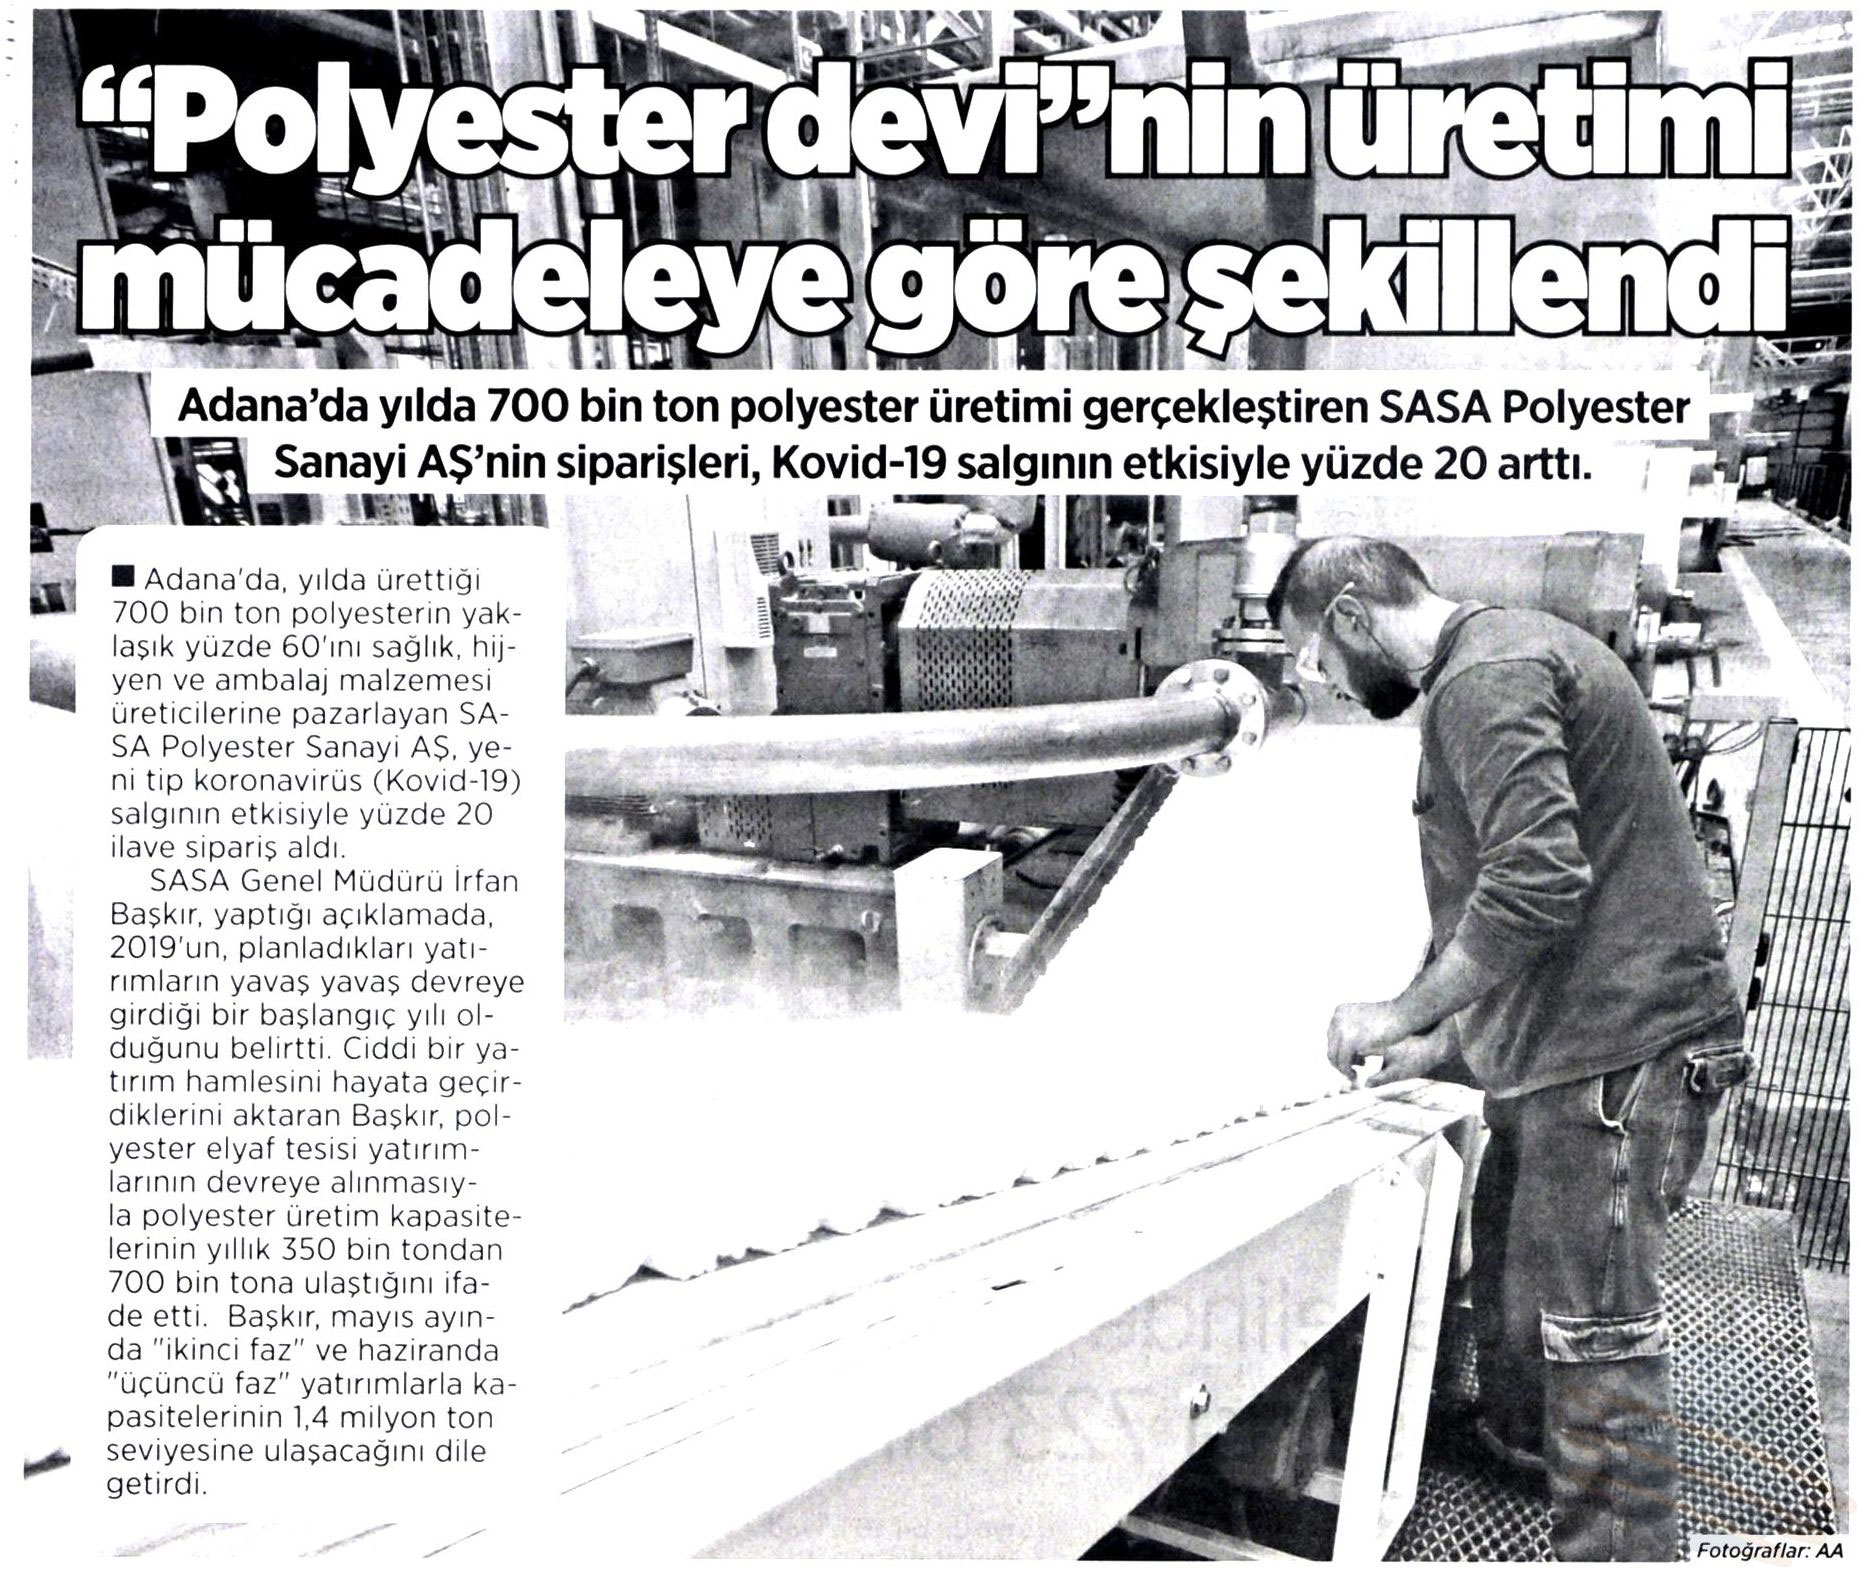 Blog yazısı Polyester devi'nin üretimi mücadeleye göre şekillendiiçin resim